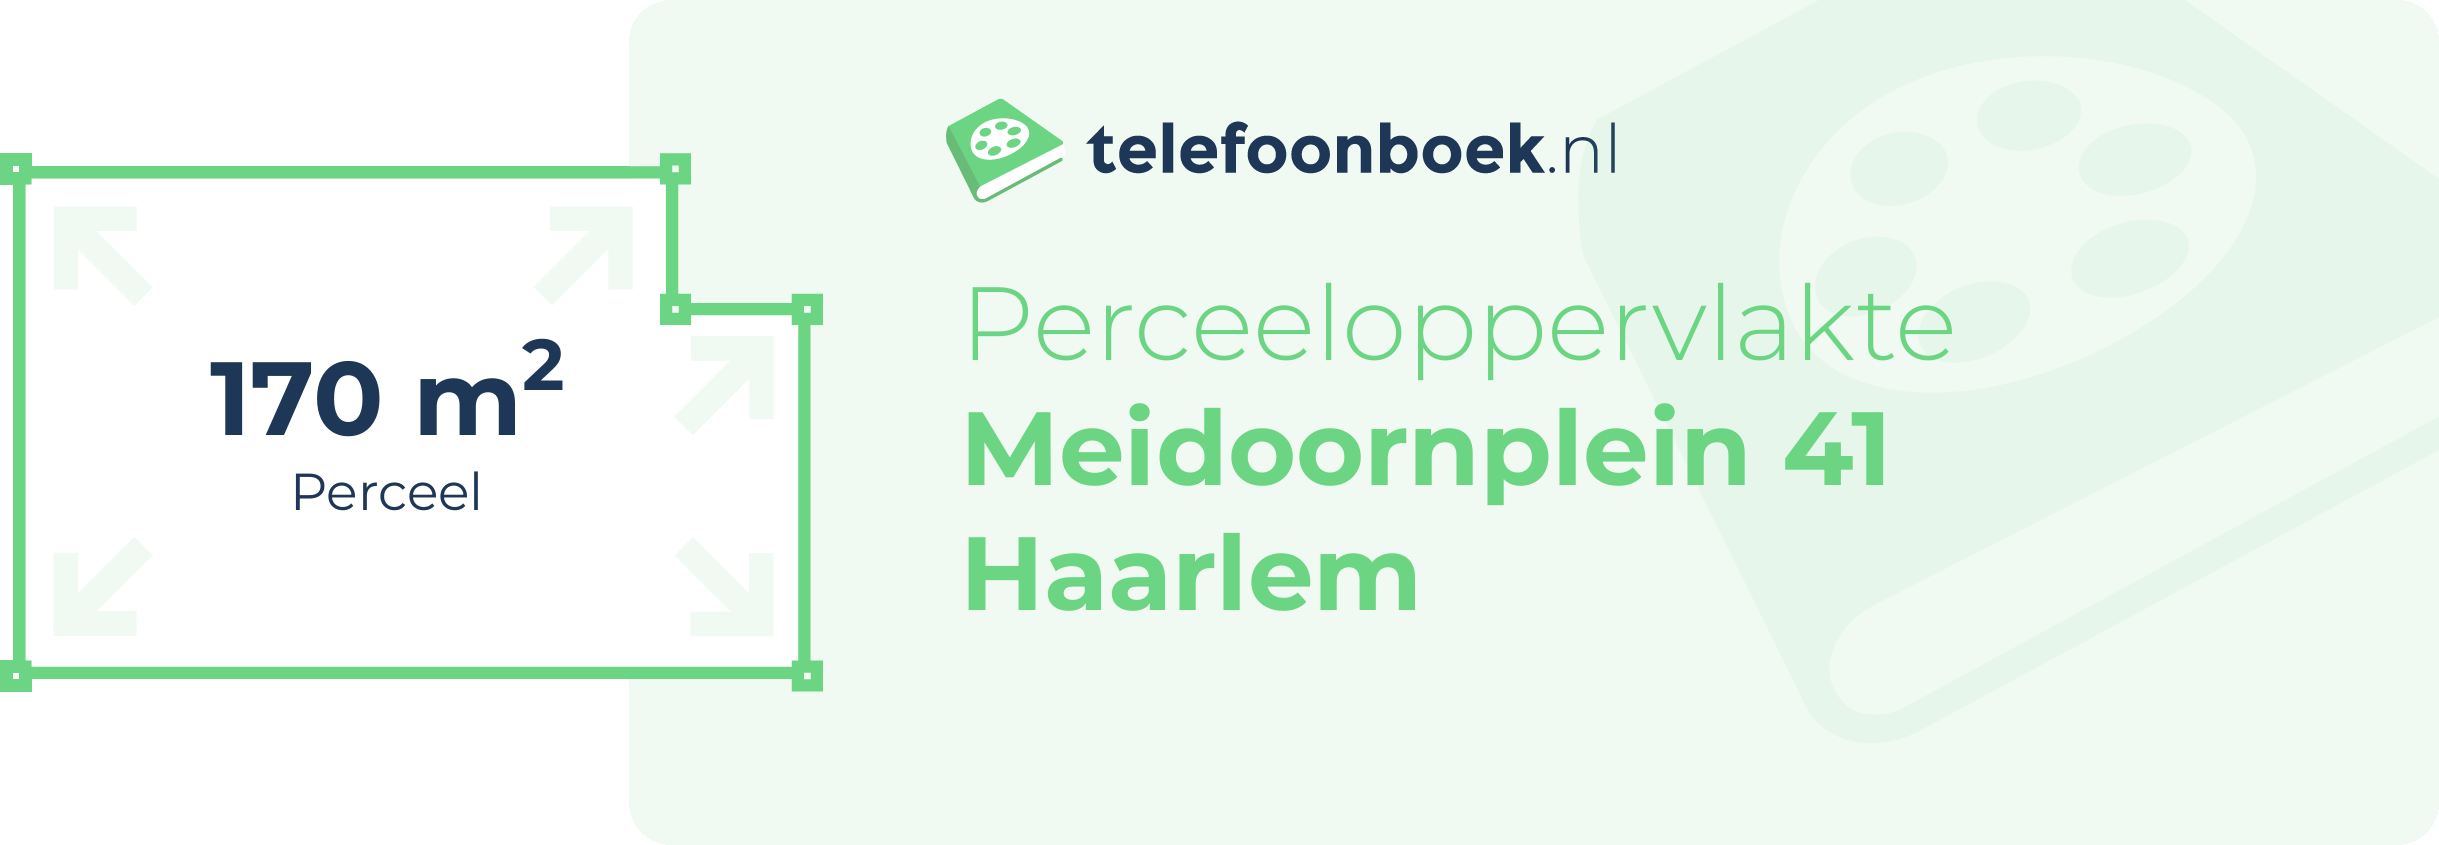 Perceeloppervlakte Meidoornplein 41 Haarlem